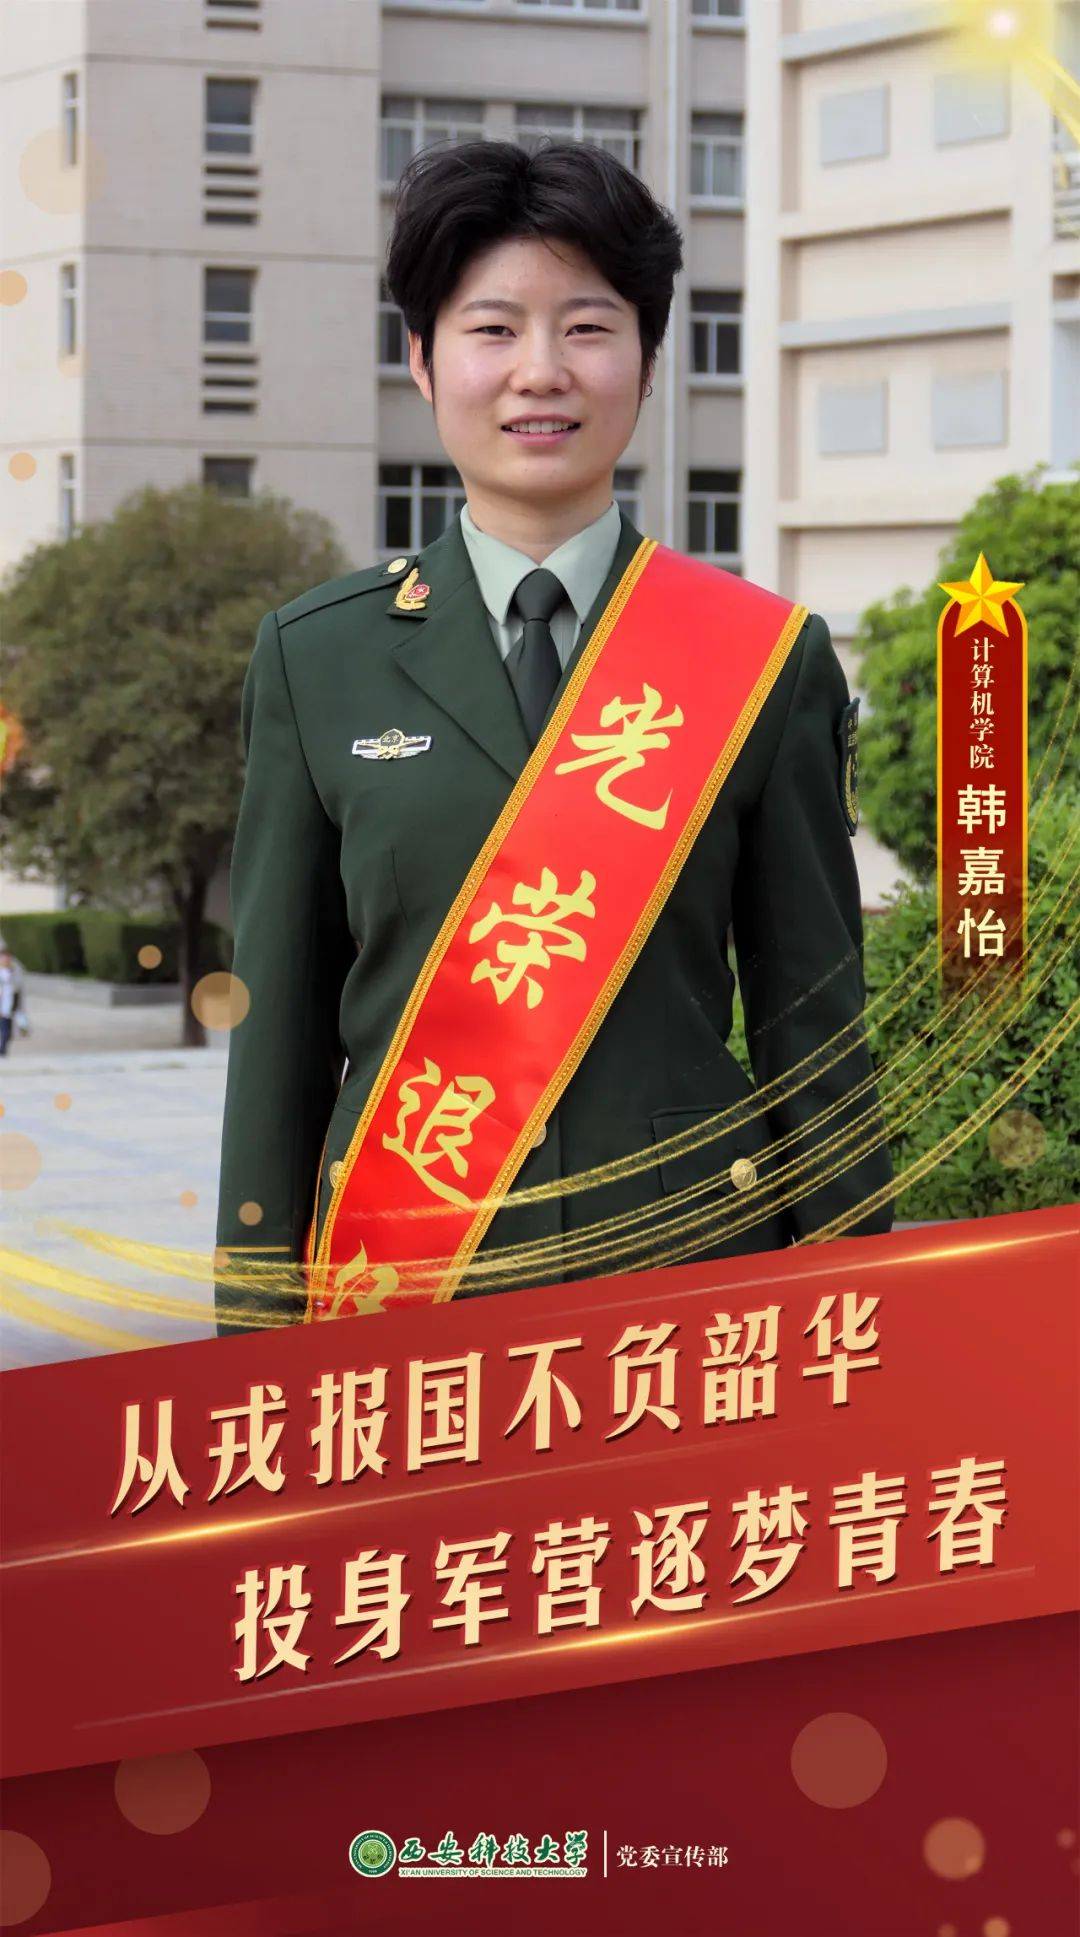 韩嘉怡,女,2020年9月入学,2022年3月入伍,服役于武警北京市总队执勤某